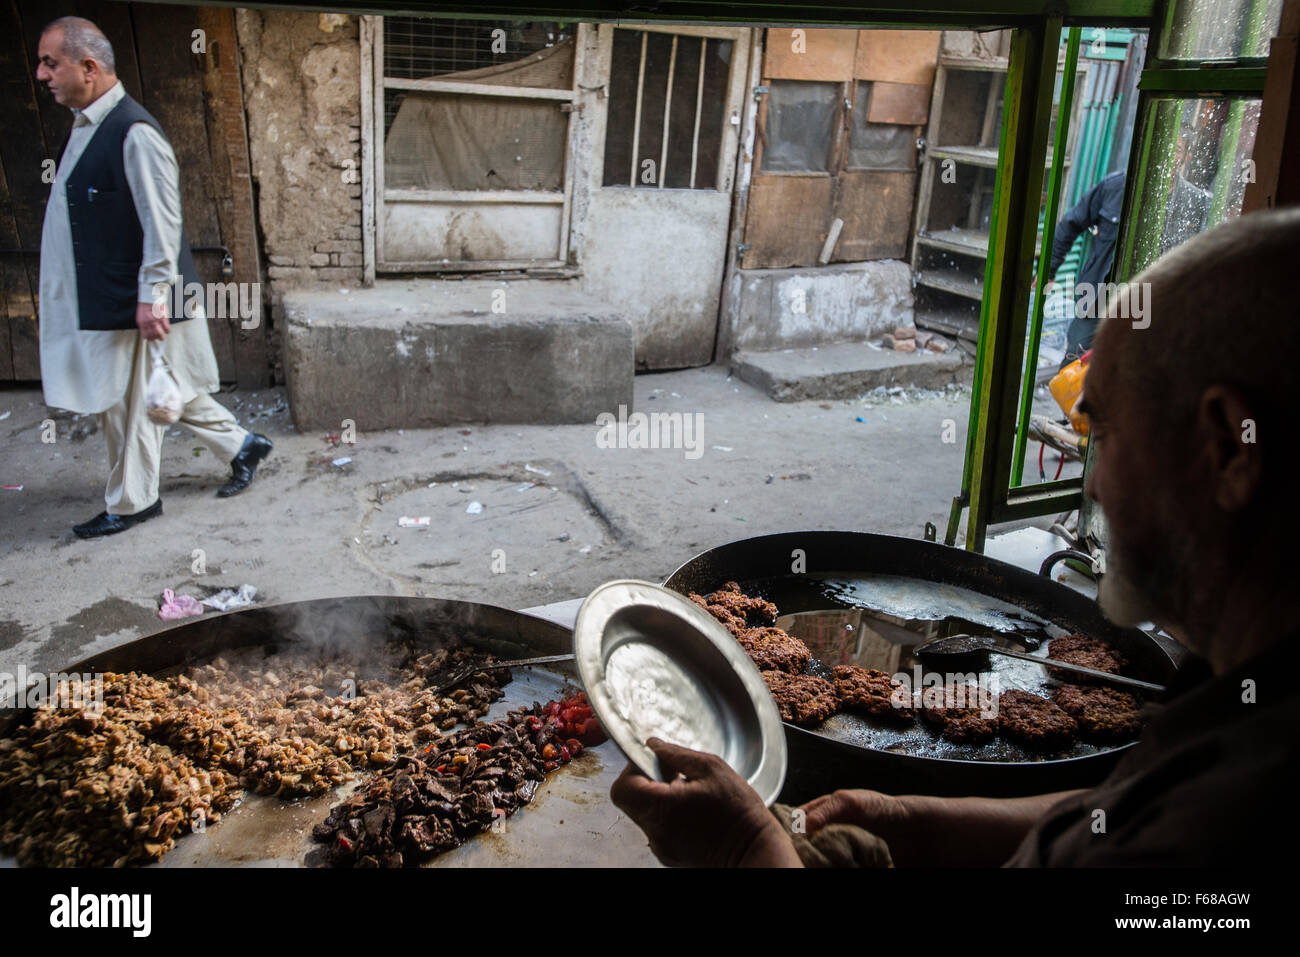 Uomo senior di preparare la carne nel ristorante tradizionale a Ka Farushi Bird's mercato, Kabul, Afghanistan Foto Stock